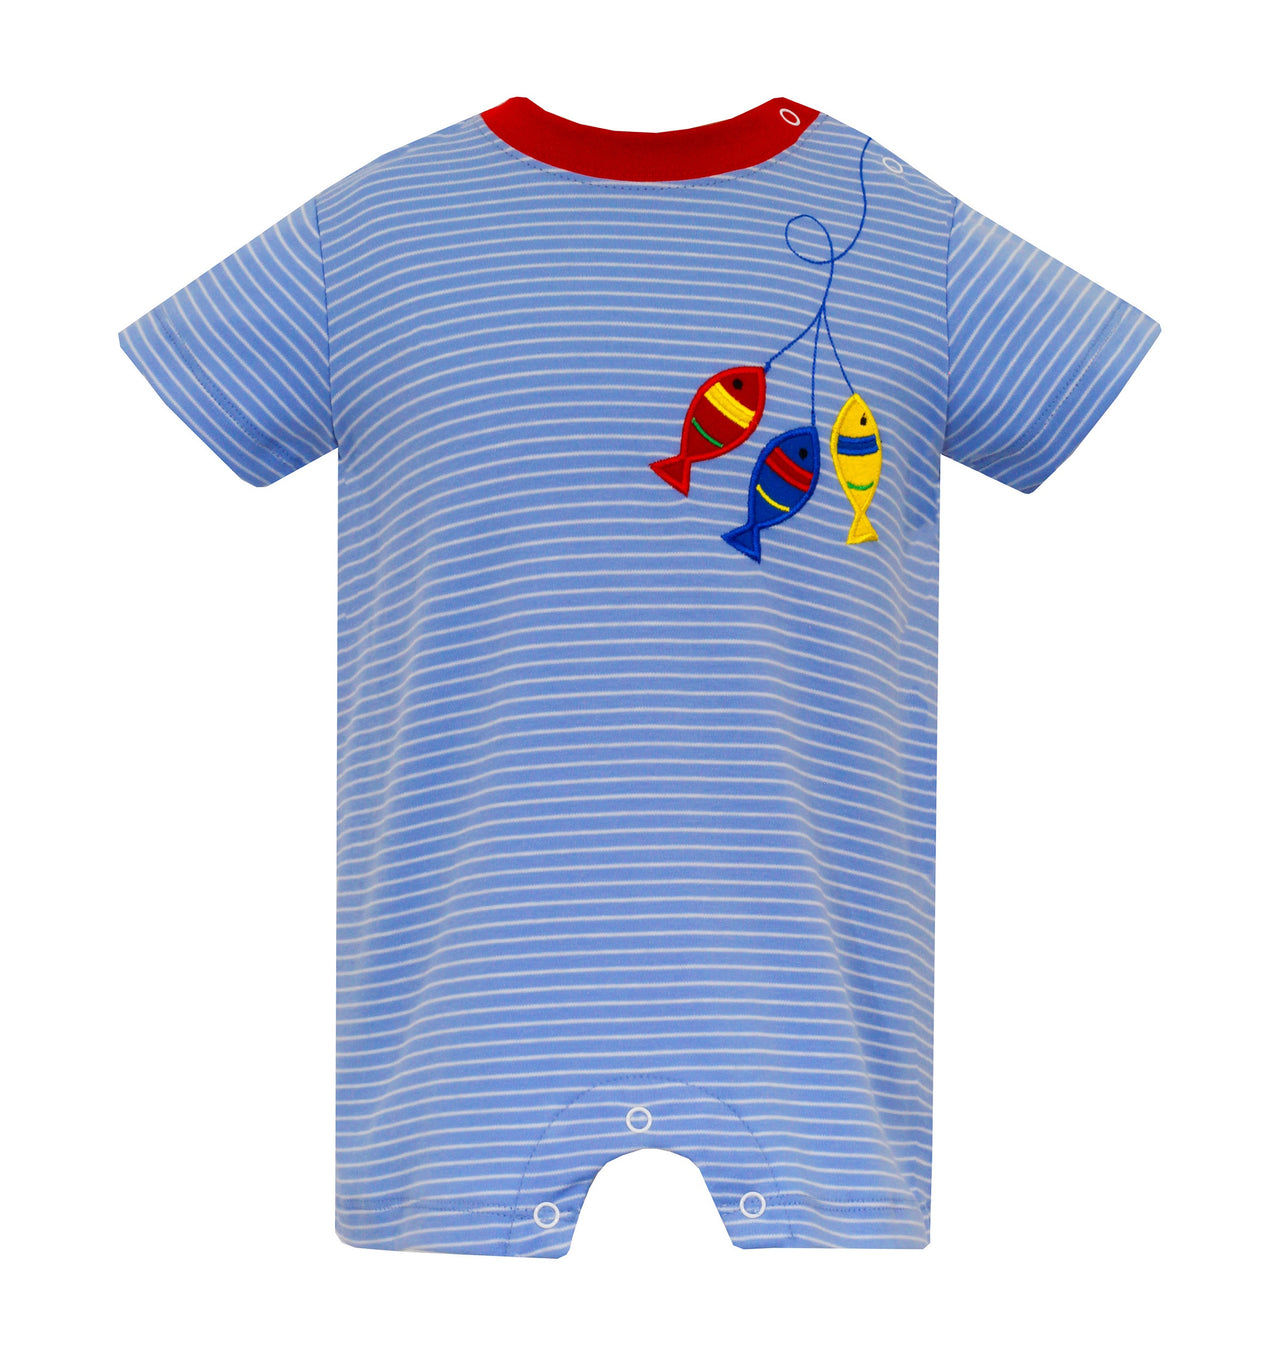 Claire & Charlie Fish Periwinkle Blue Stripe Knit Boy's Romper 5055H-CS24 5103